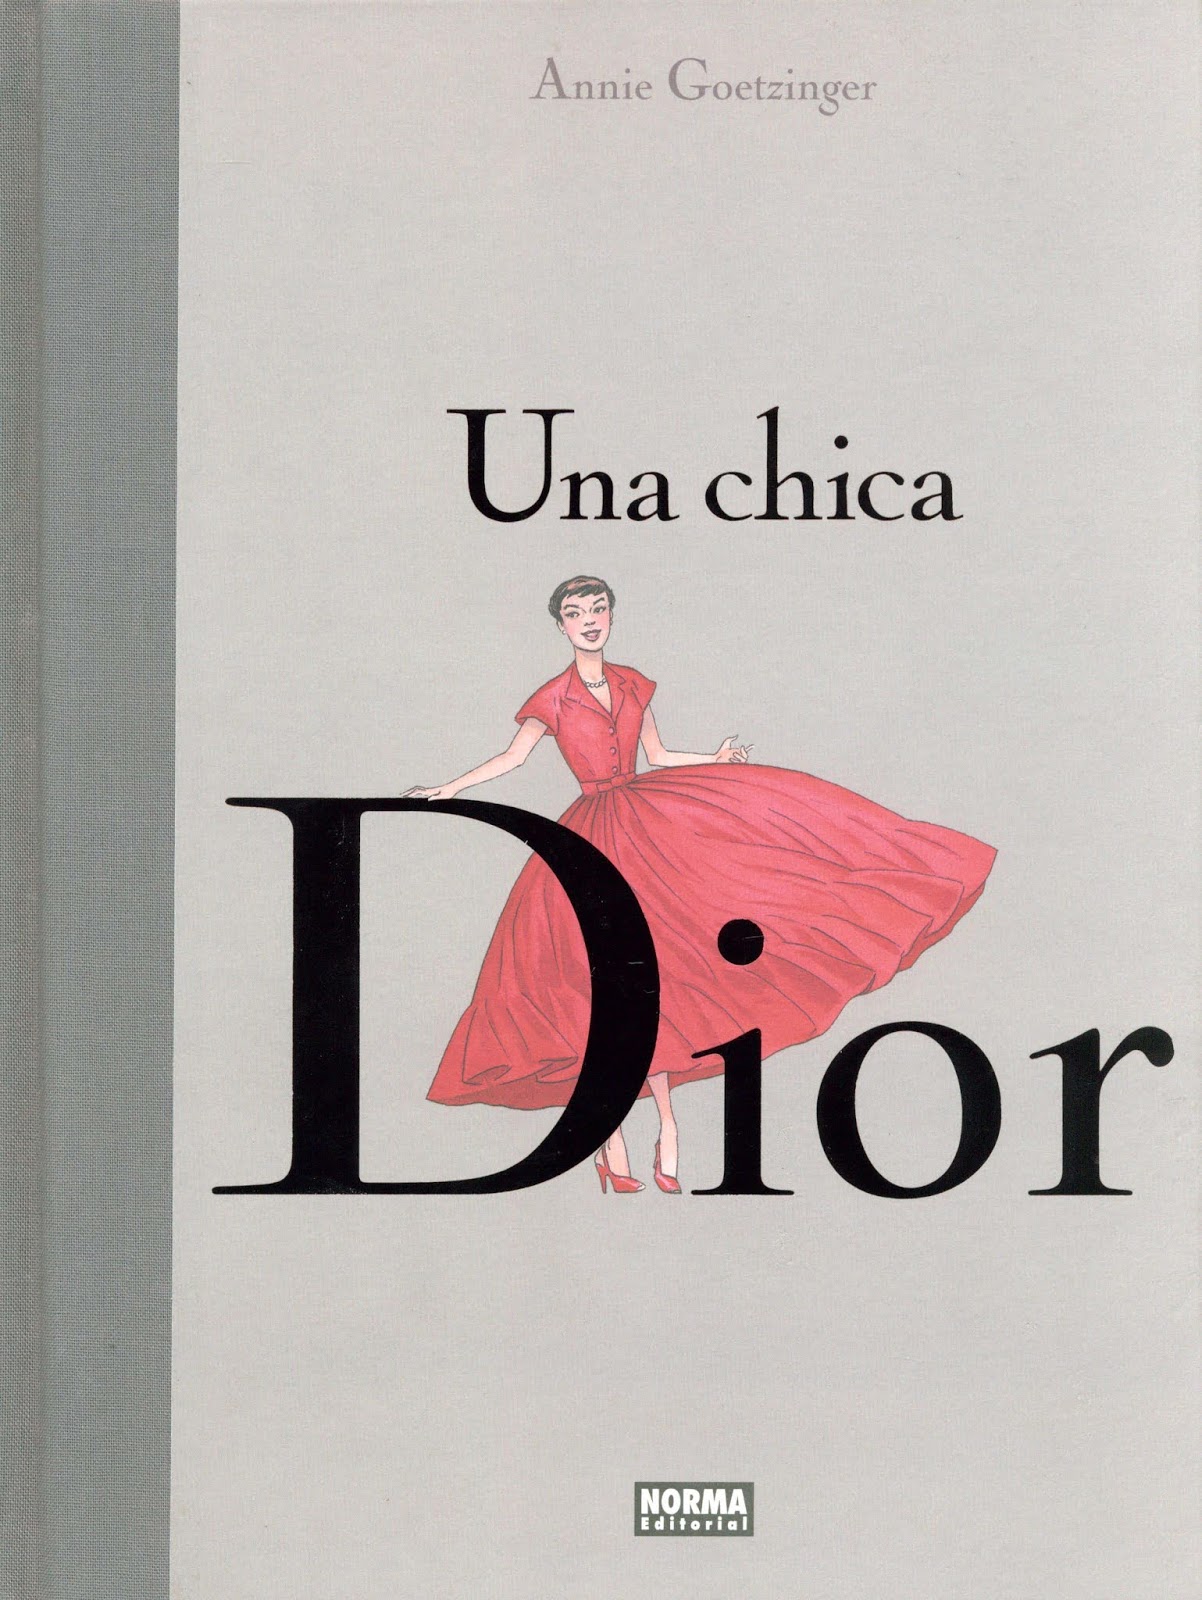 Una chica Dior